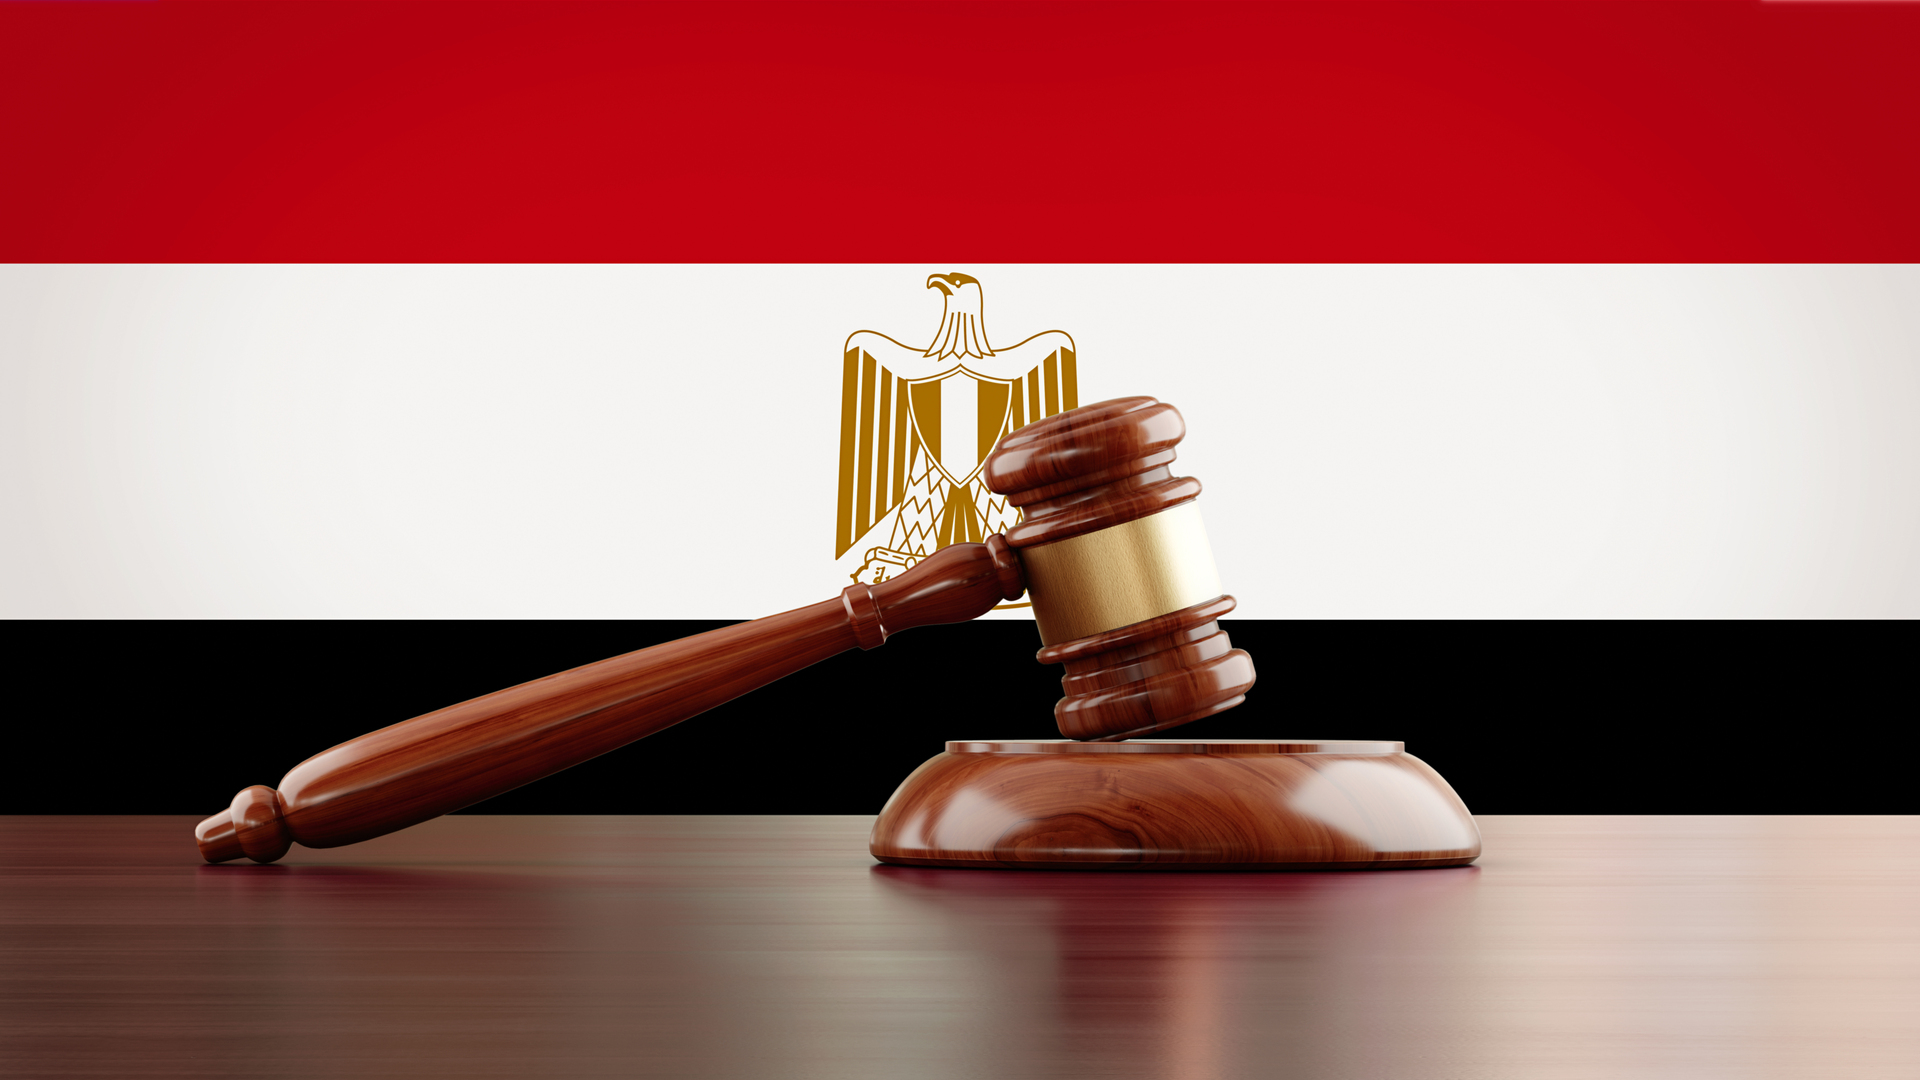 الداخلية المصرية تنفي مزاعم بشأن وفاة شخص في قسم للشرطة بالقاهرة